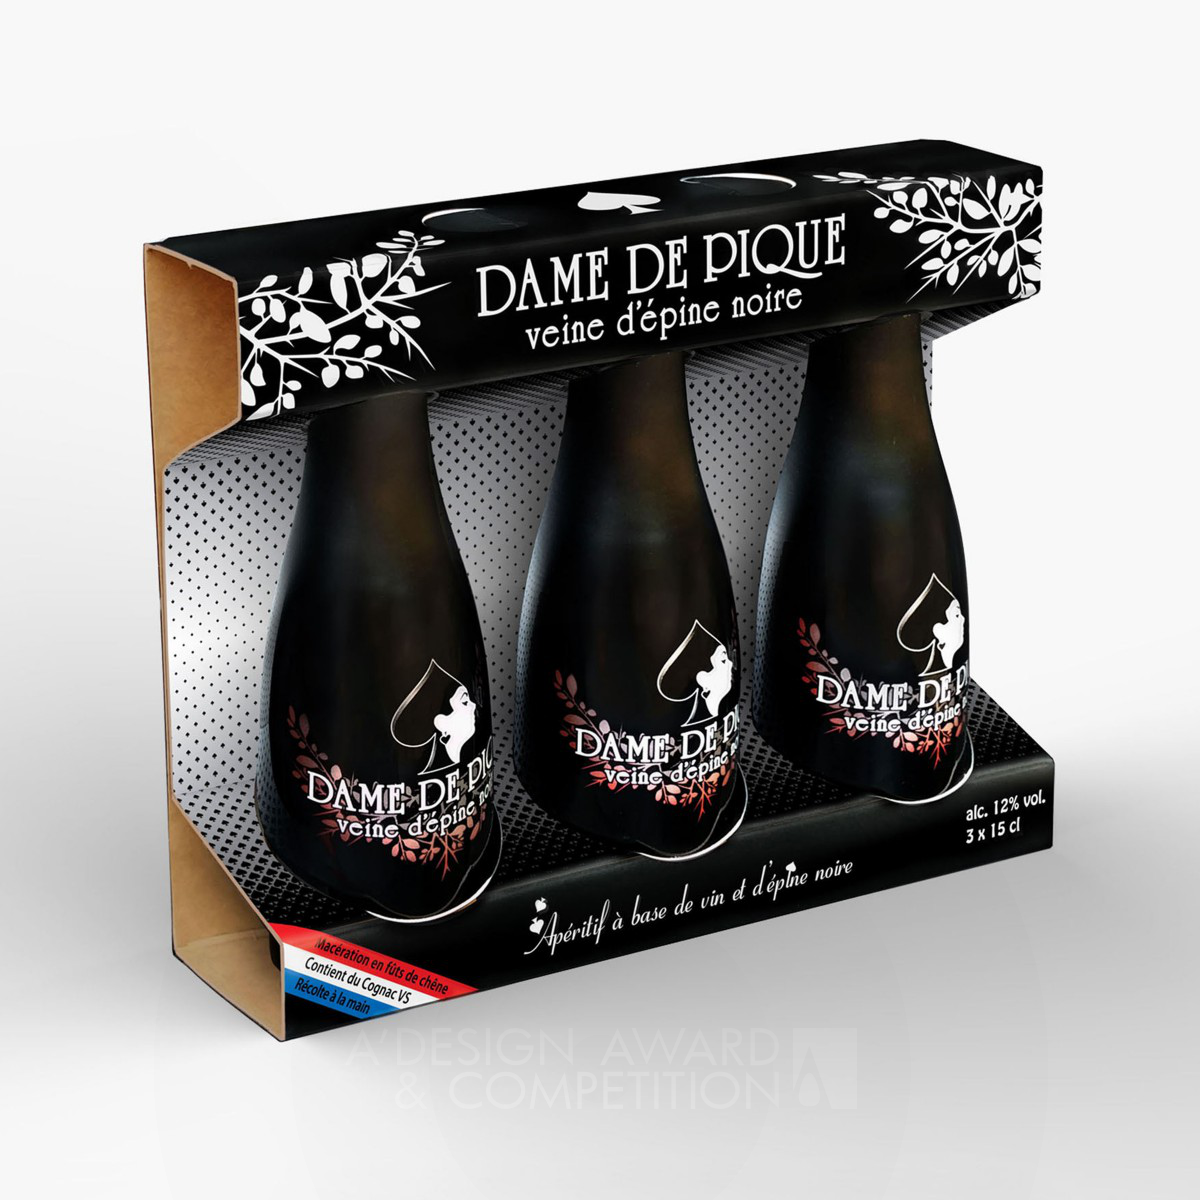 Dame de Pique Bottle packaging by Romuald Vincent